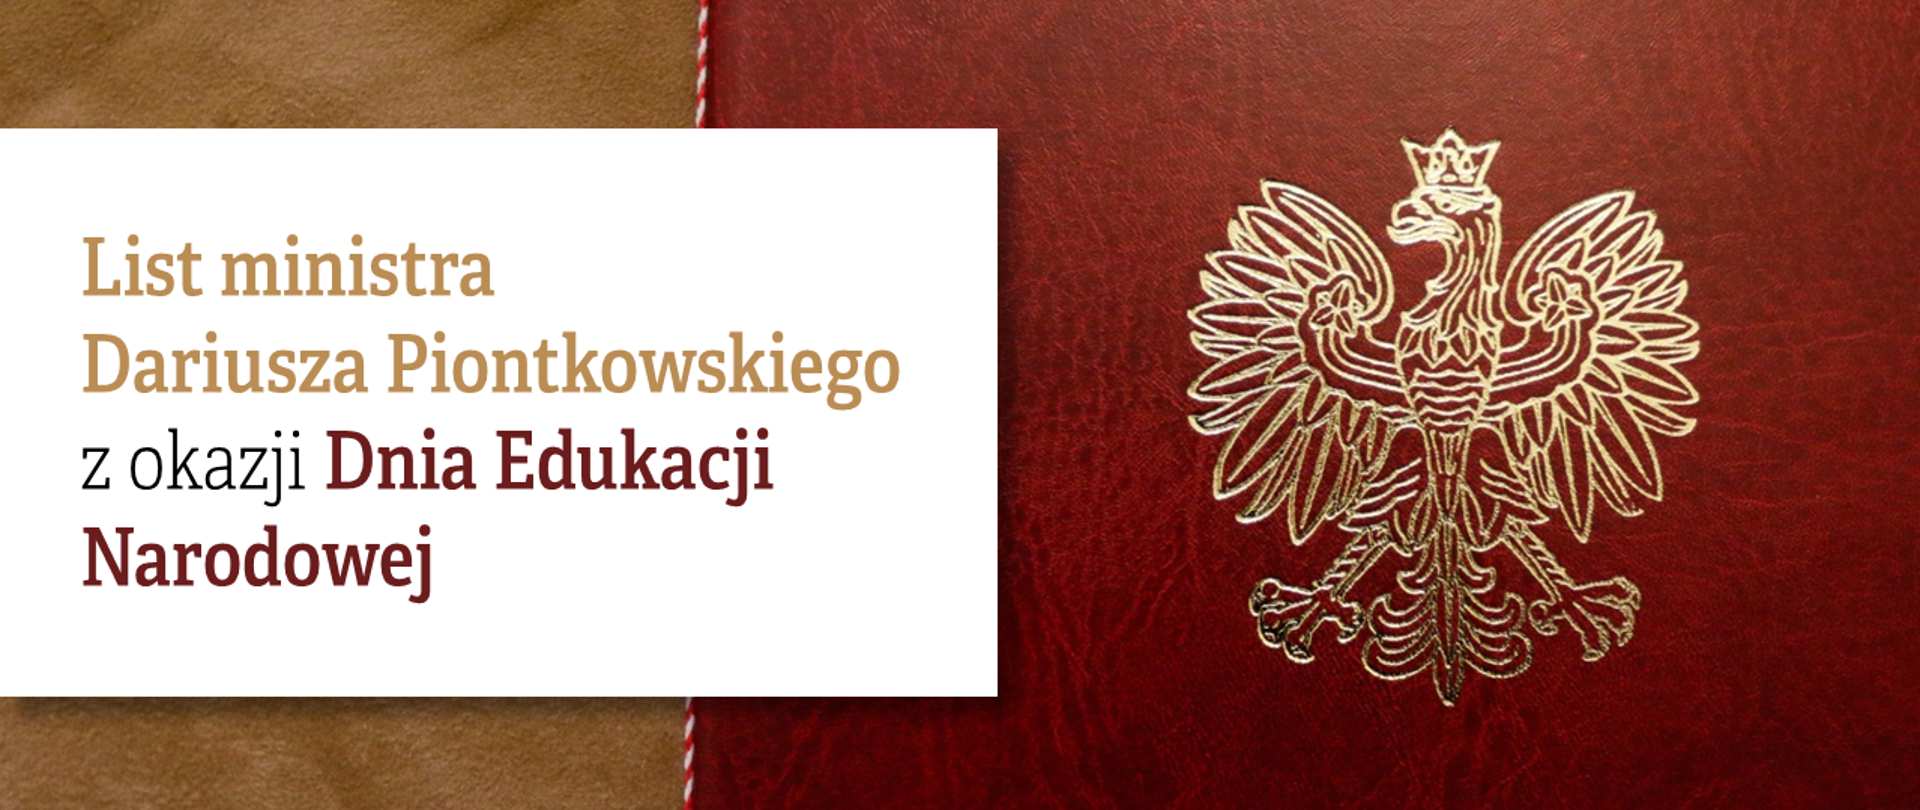 Teczka ze złotym polskim orłem i tekst "List ministra Dariusza Piontkowskiego z okazji Dnia Edukacji Narodowej"